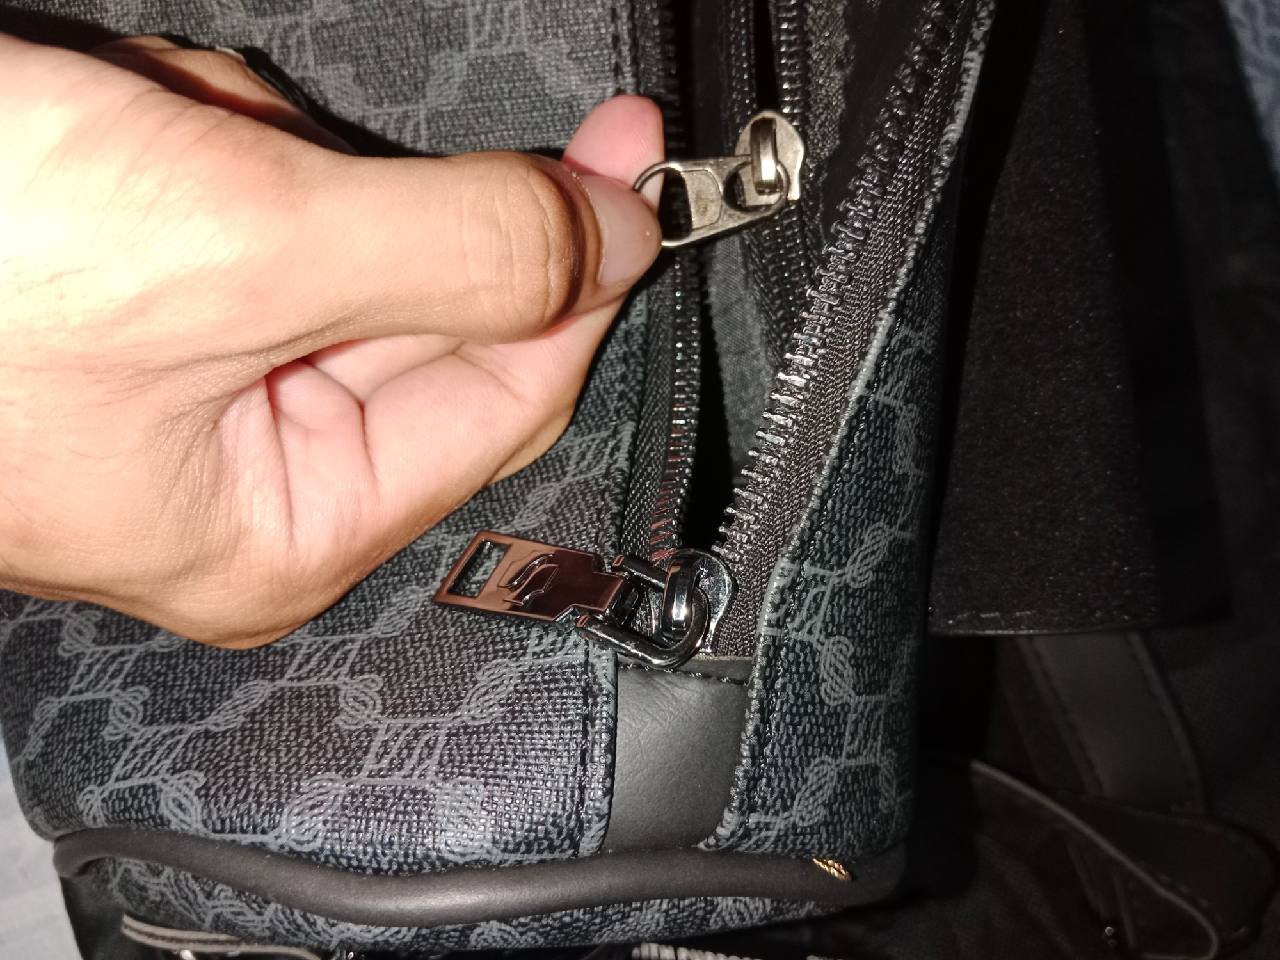 SHIGETSU SIGNATURE MONOGRAM SLING BAG, CROSSBODY BAG #officebag